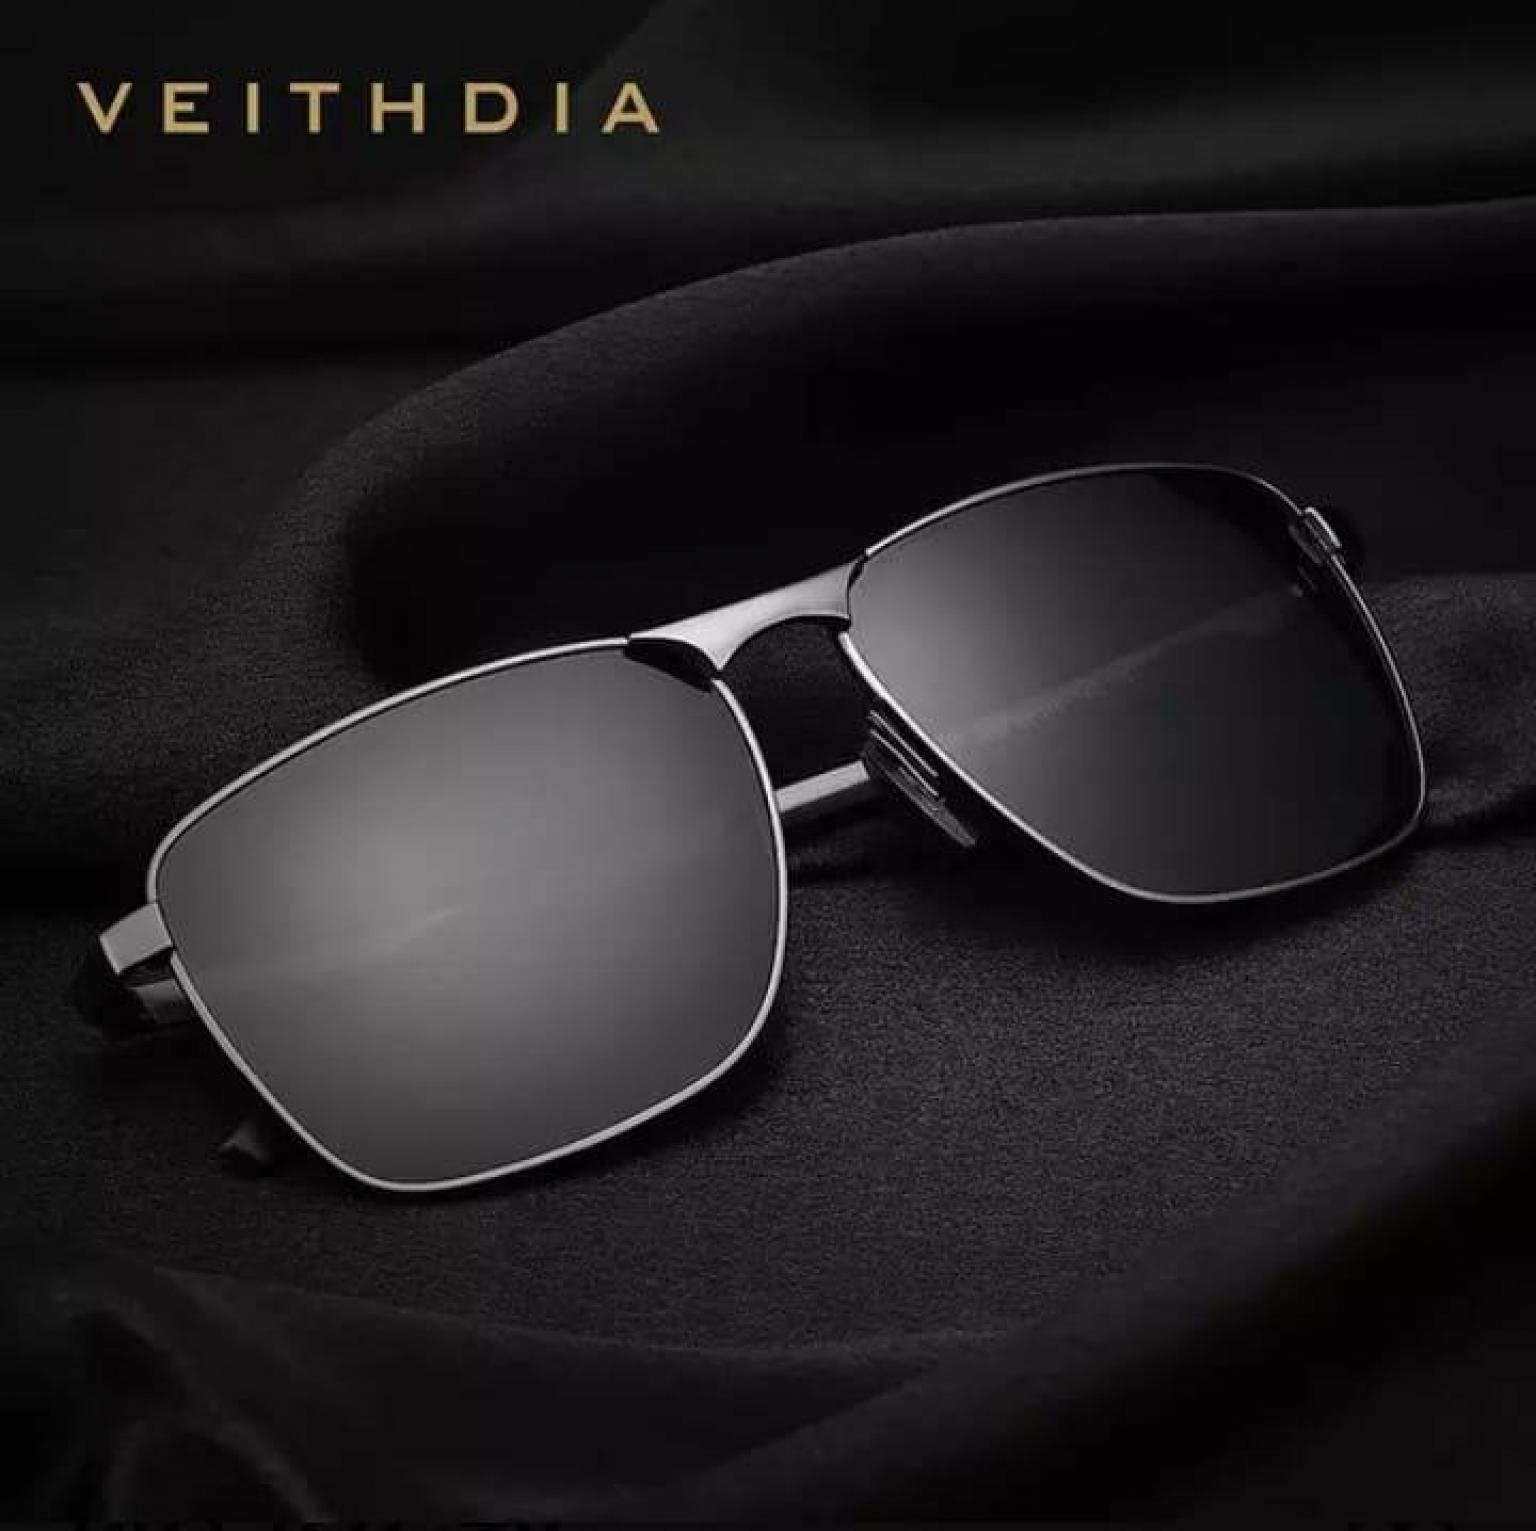 VEITHDIA Original Brand Men's Vintage Square Sunglasses Polarized UV400 Lens Eyewear Accessories Male Sun Glasses For Men/Women V2462